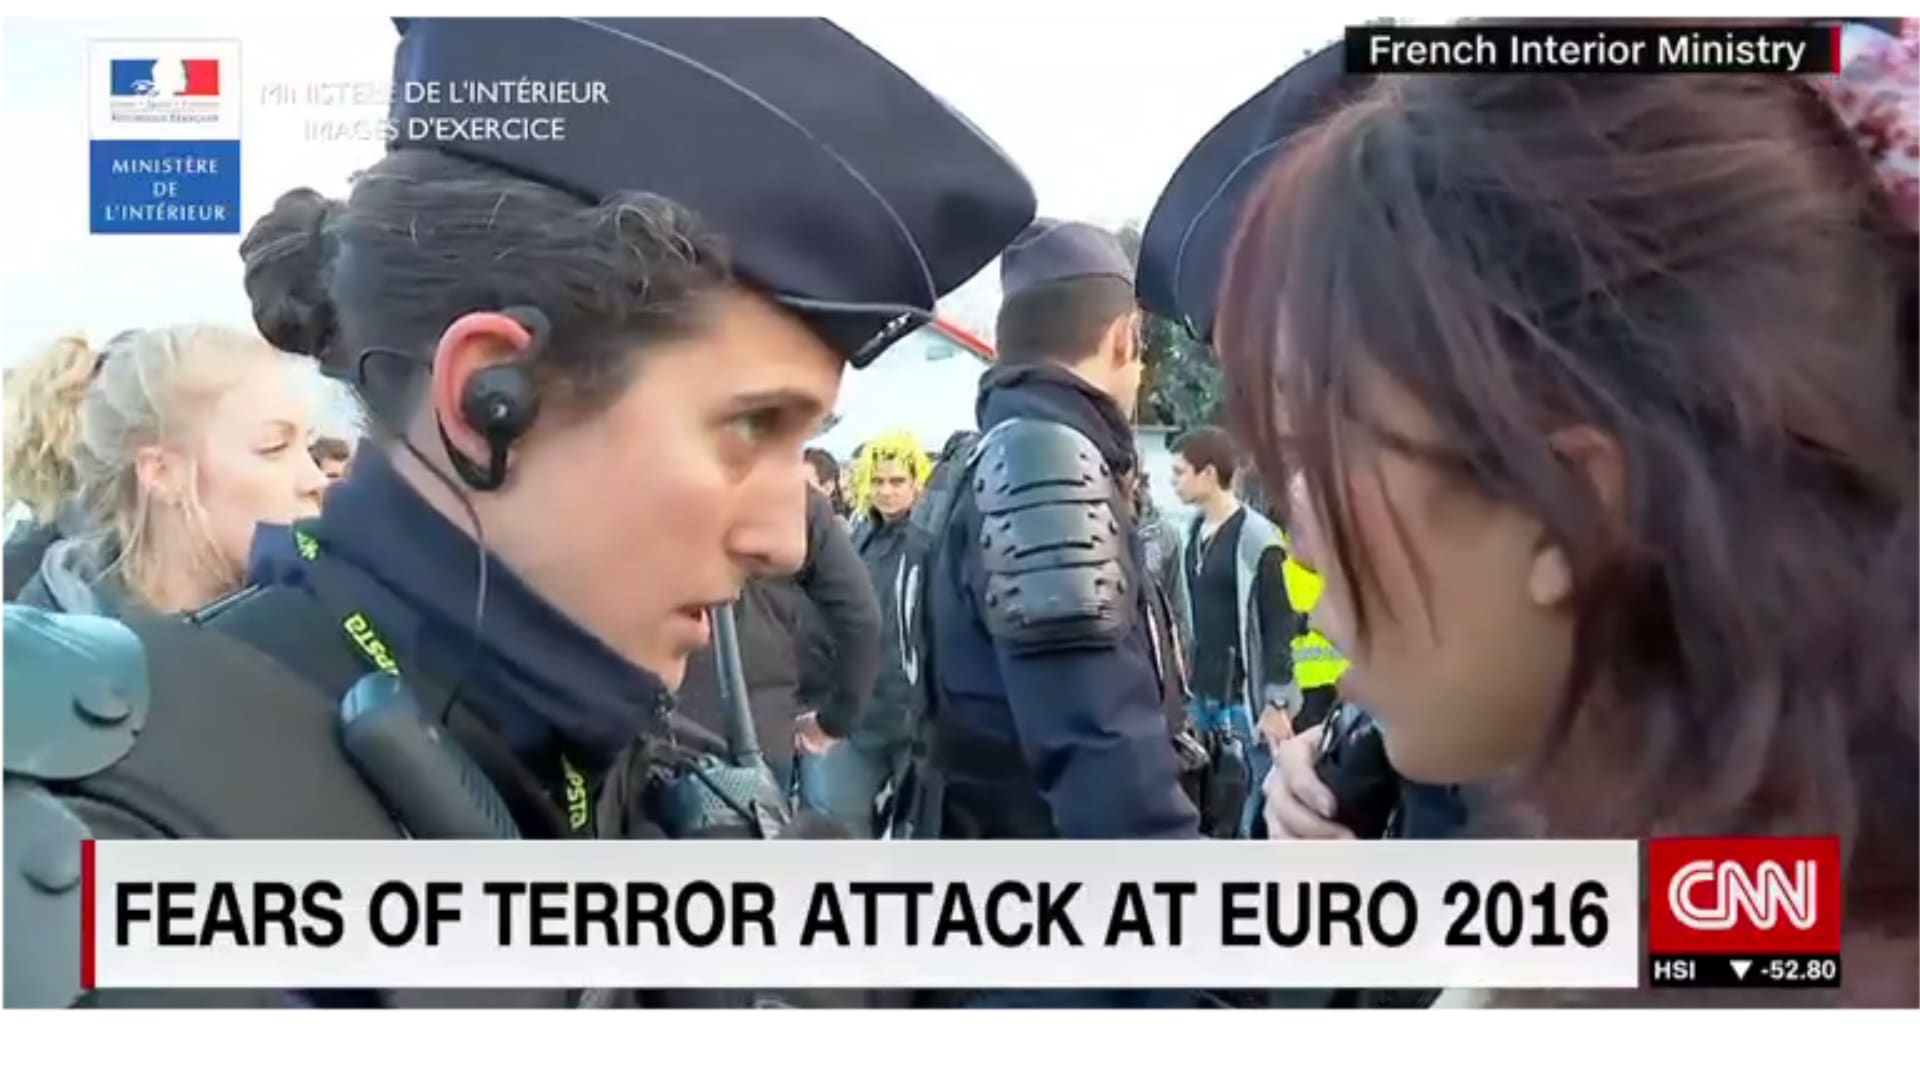 فرنسا تتأهب لتشديد الأمن حول بطولة يورو 2016 خوفا من "داعش"